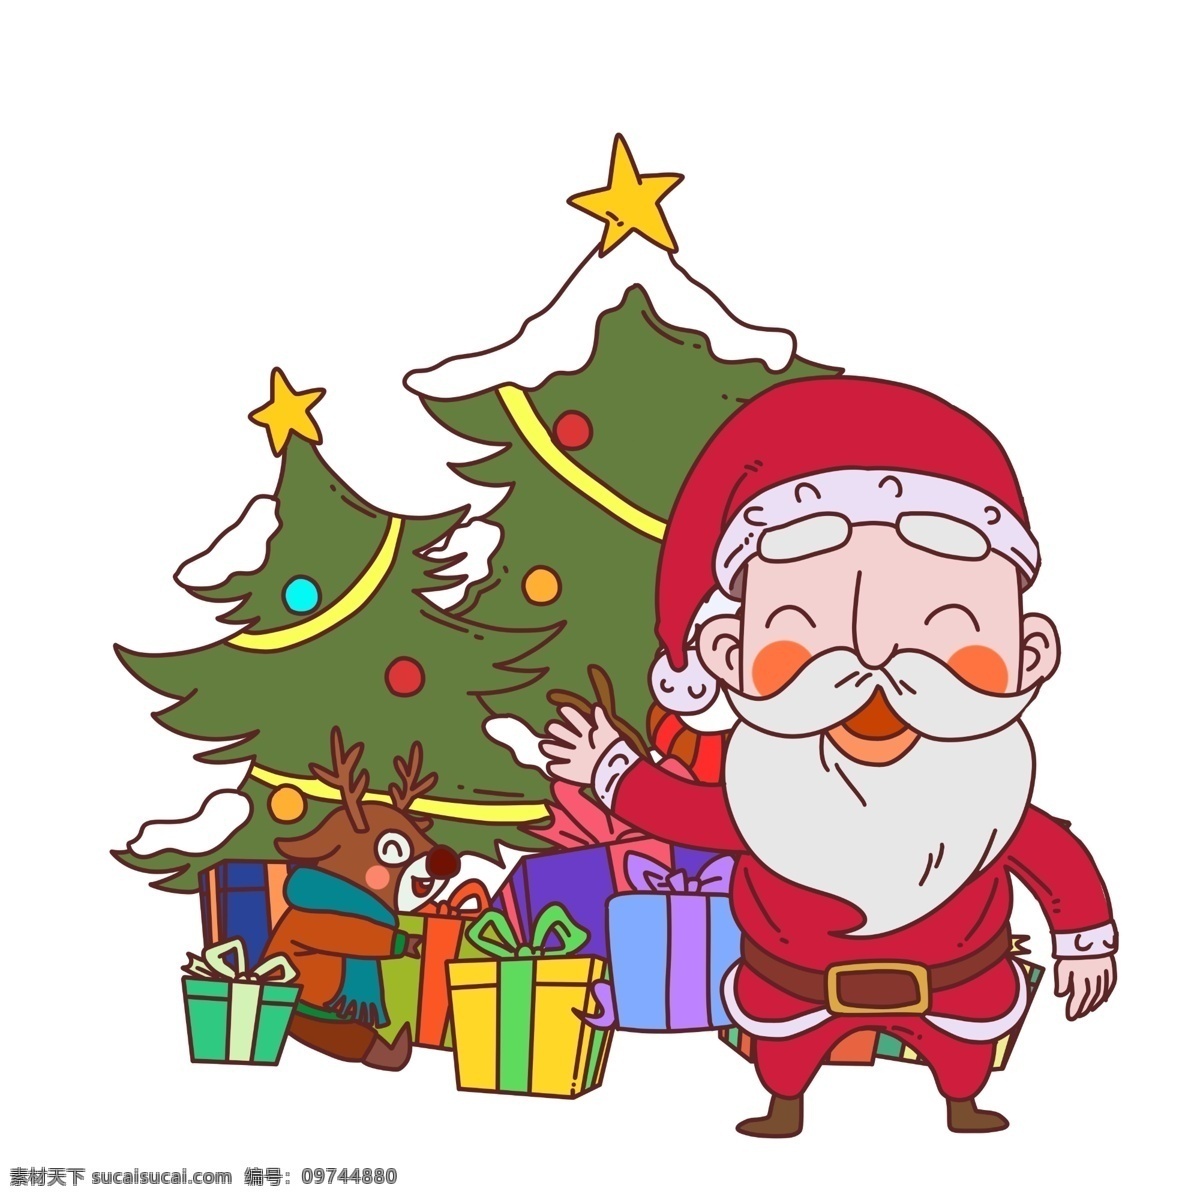 圣诞节 圣诞老人 礼物 盒 插画 圣诞树 雪人 圣诞快乐 礼物盒 雪 麋鹿 圣诞装饰 雪人插画 白雪 手绘圣诞树